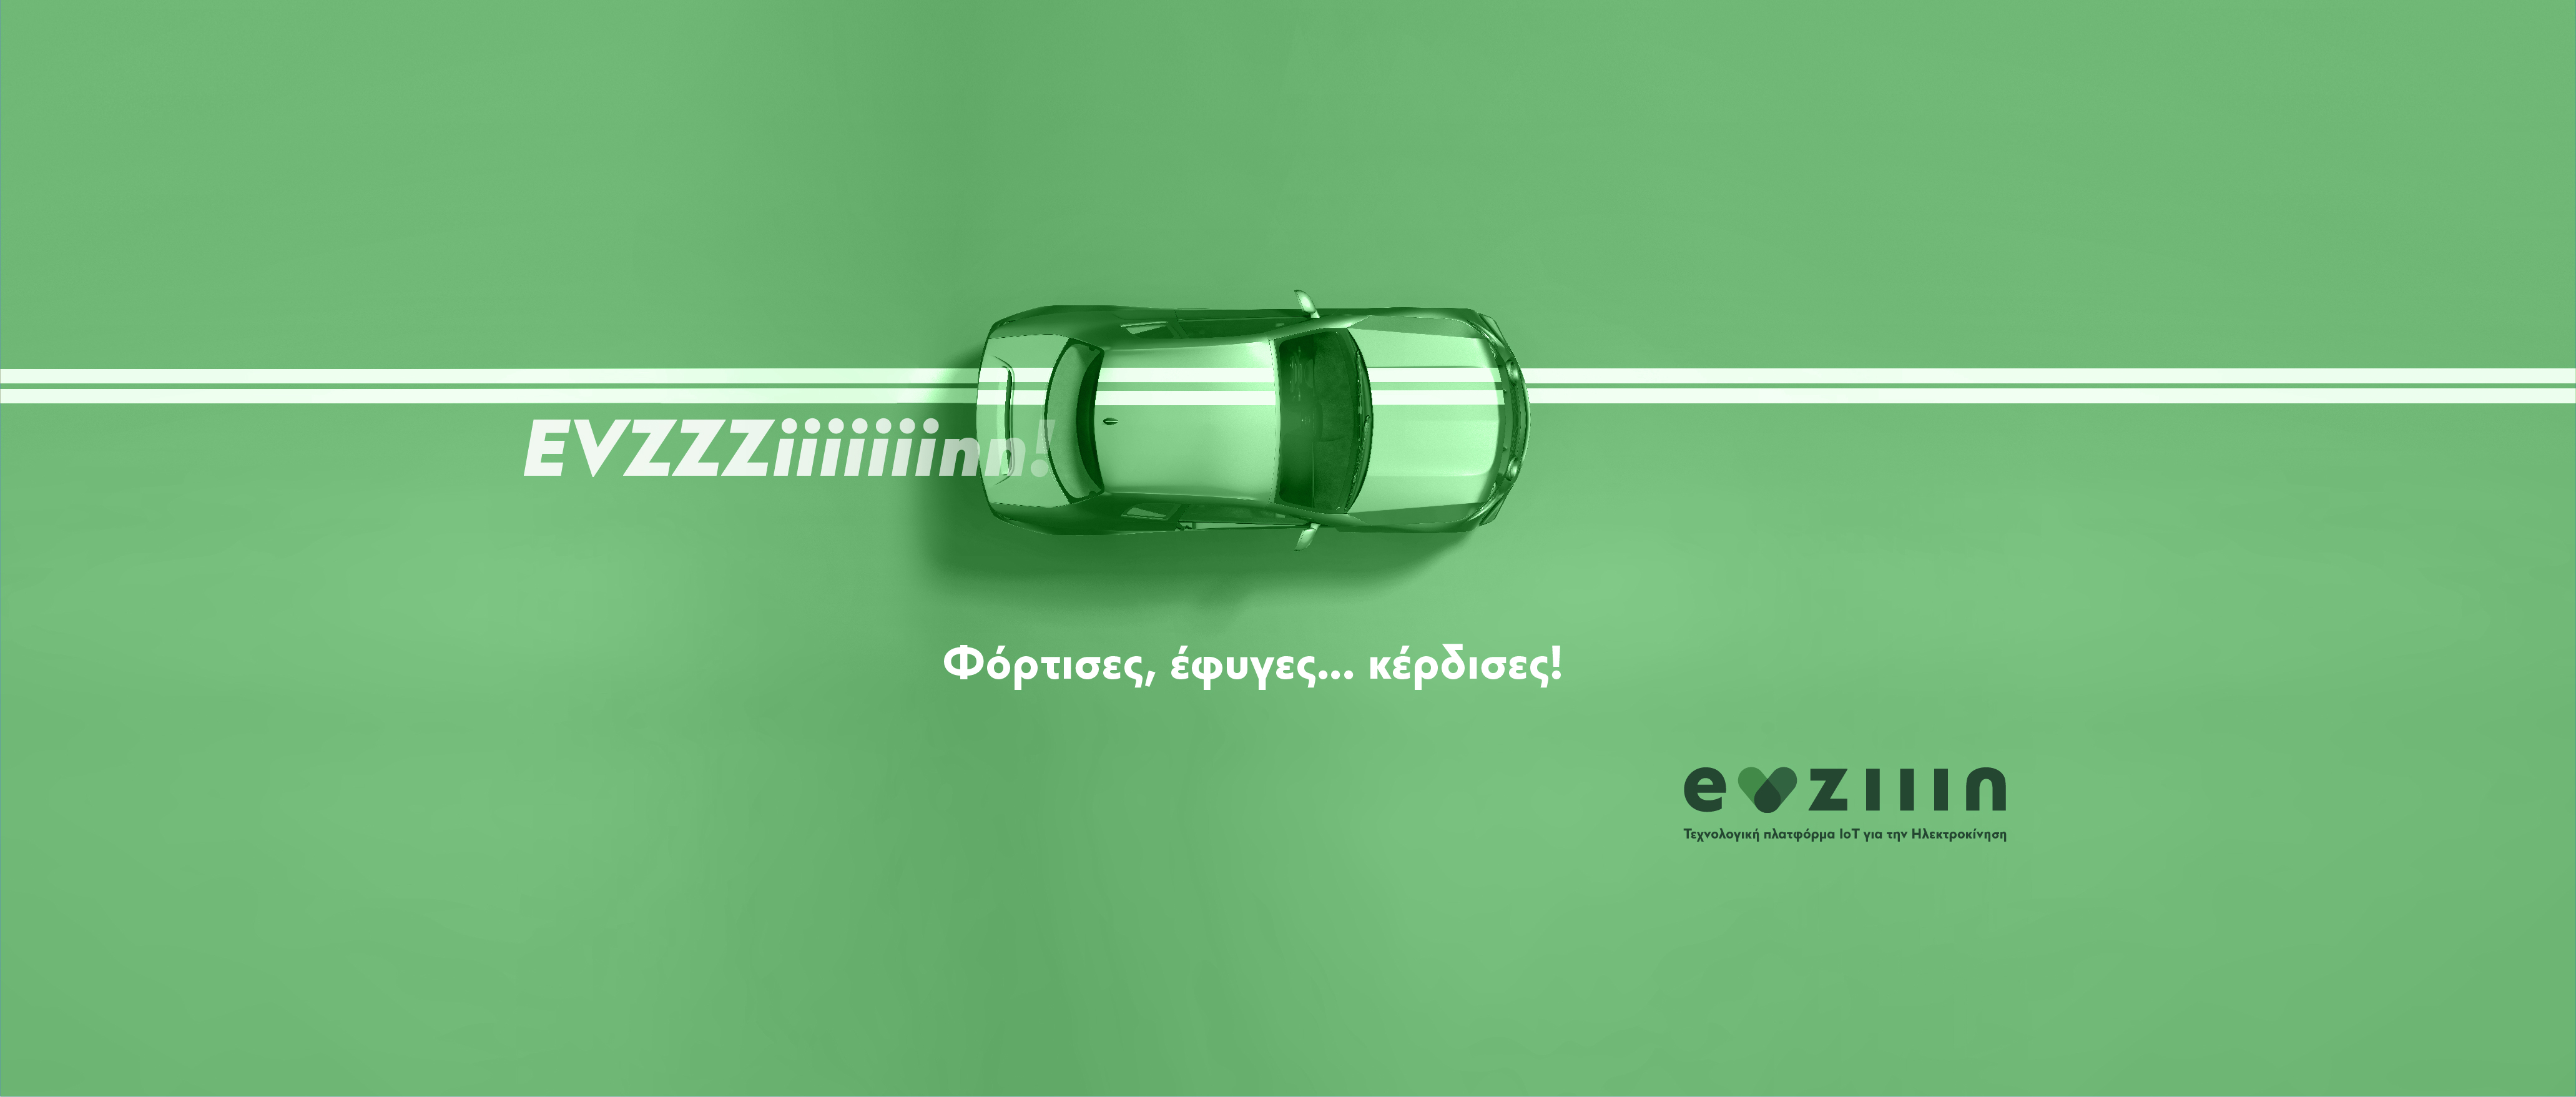 Συνδεθείτε με την IoT πλατφόρμα ηλεκτροκίνησης της EVziiin© και φορτίστε το ηλεκτρικό σας όχημα